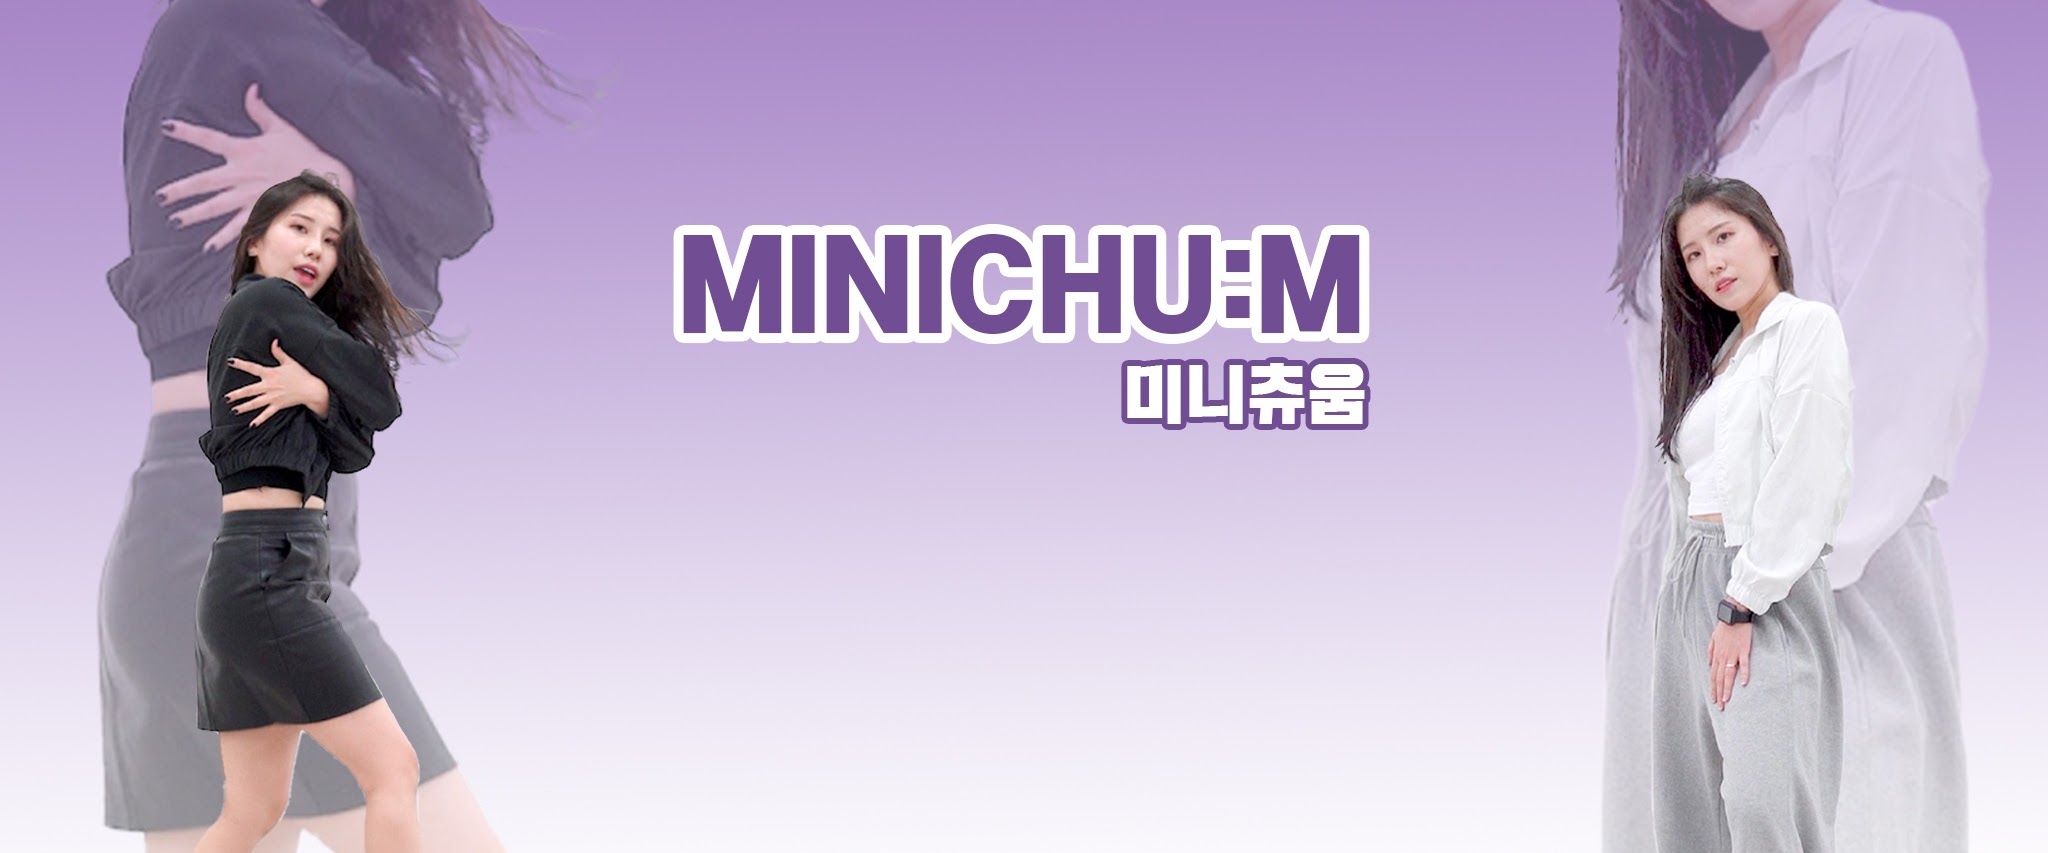 Minichu